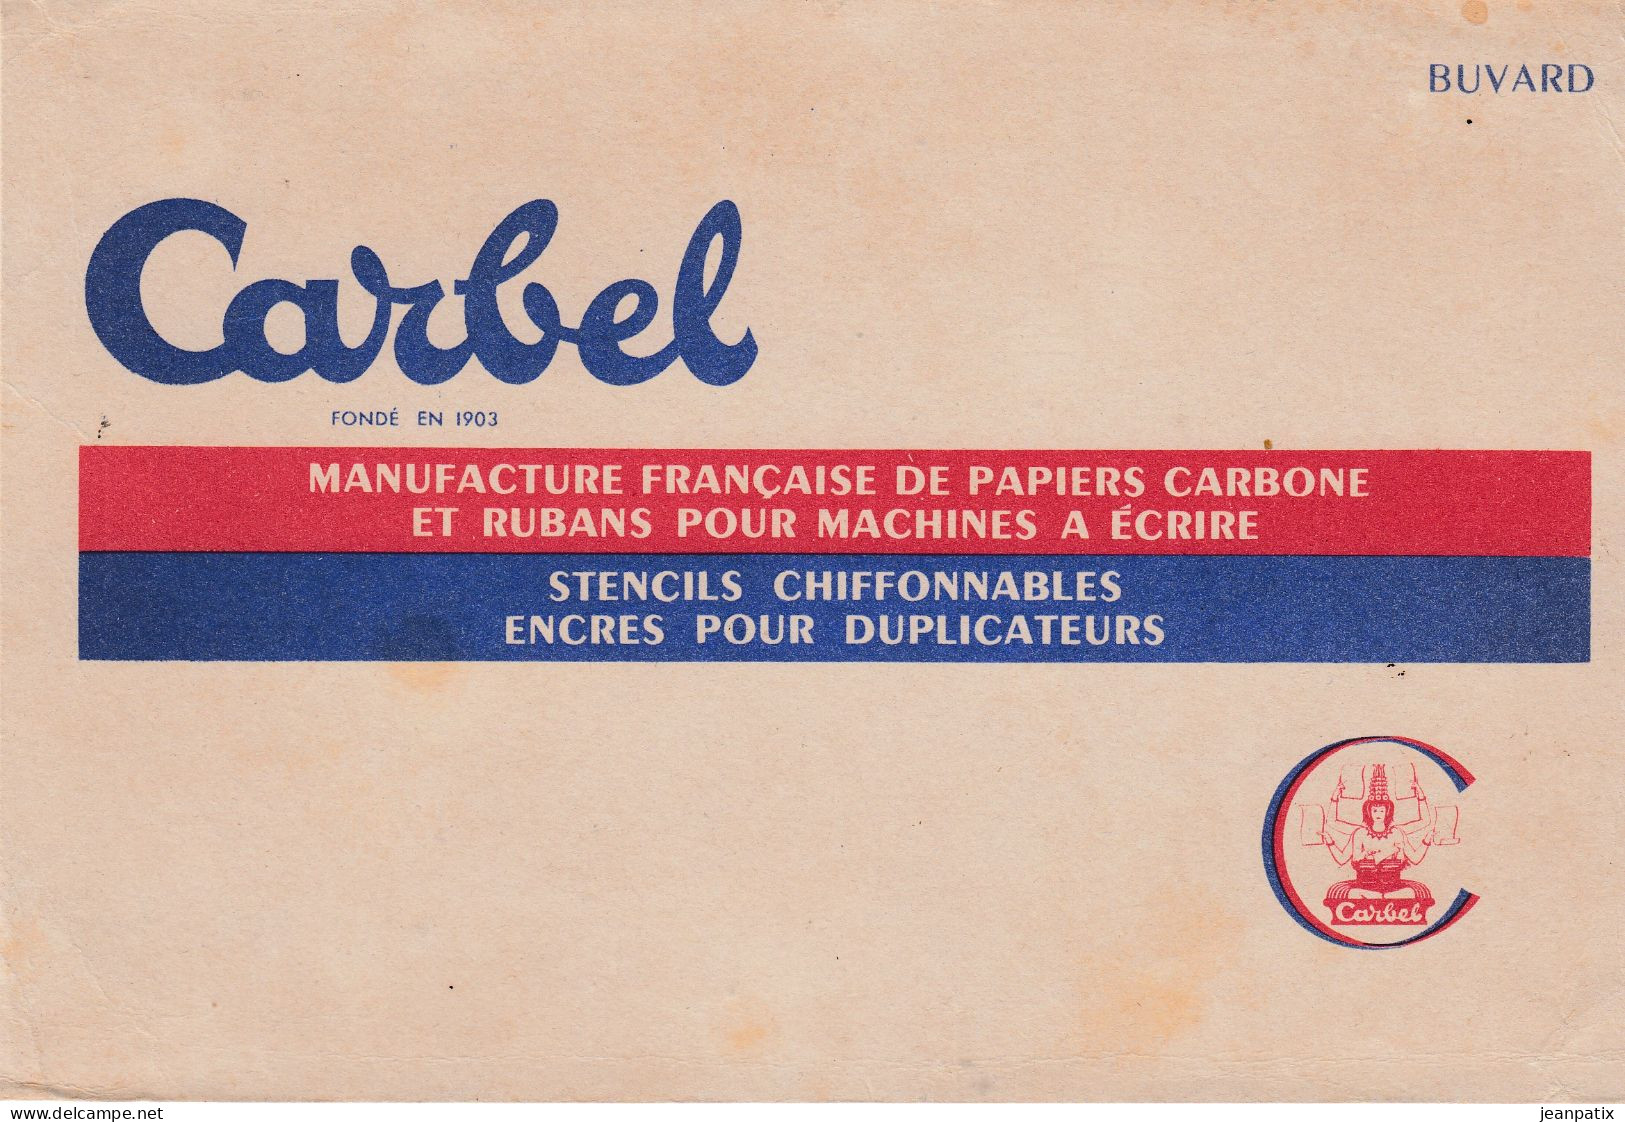 BUVARD & BLOTTER - CARBEL - Manufacture De Papier Carbone Our Machine à écrire - Cacao